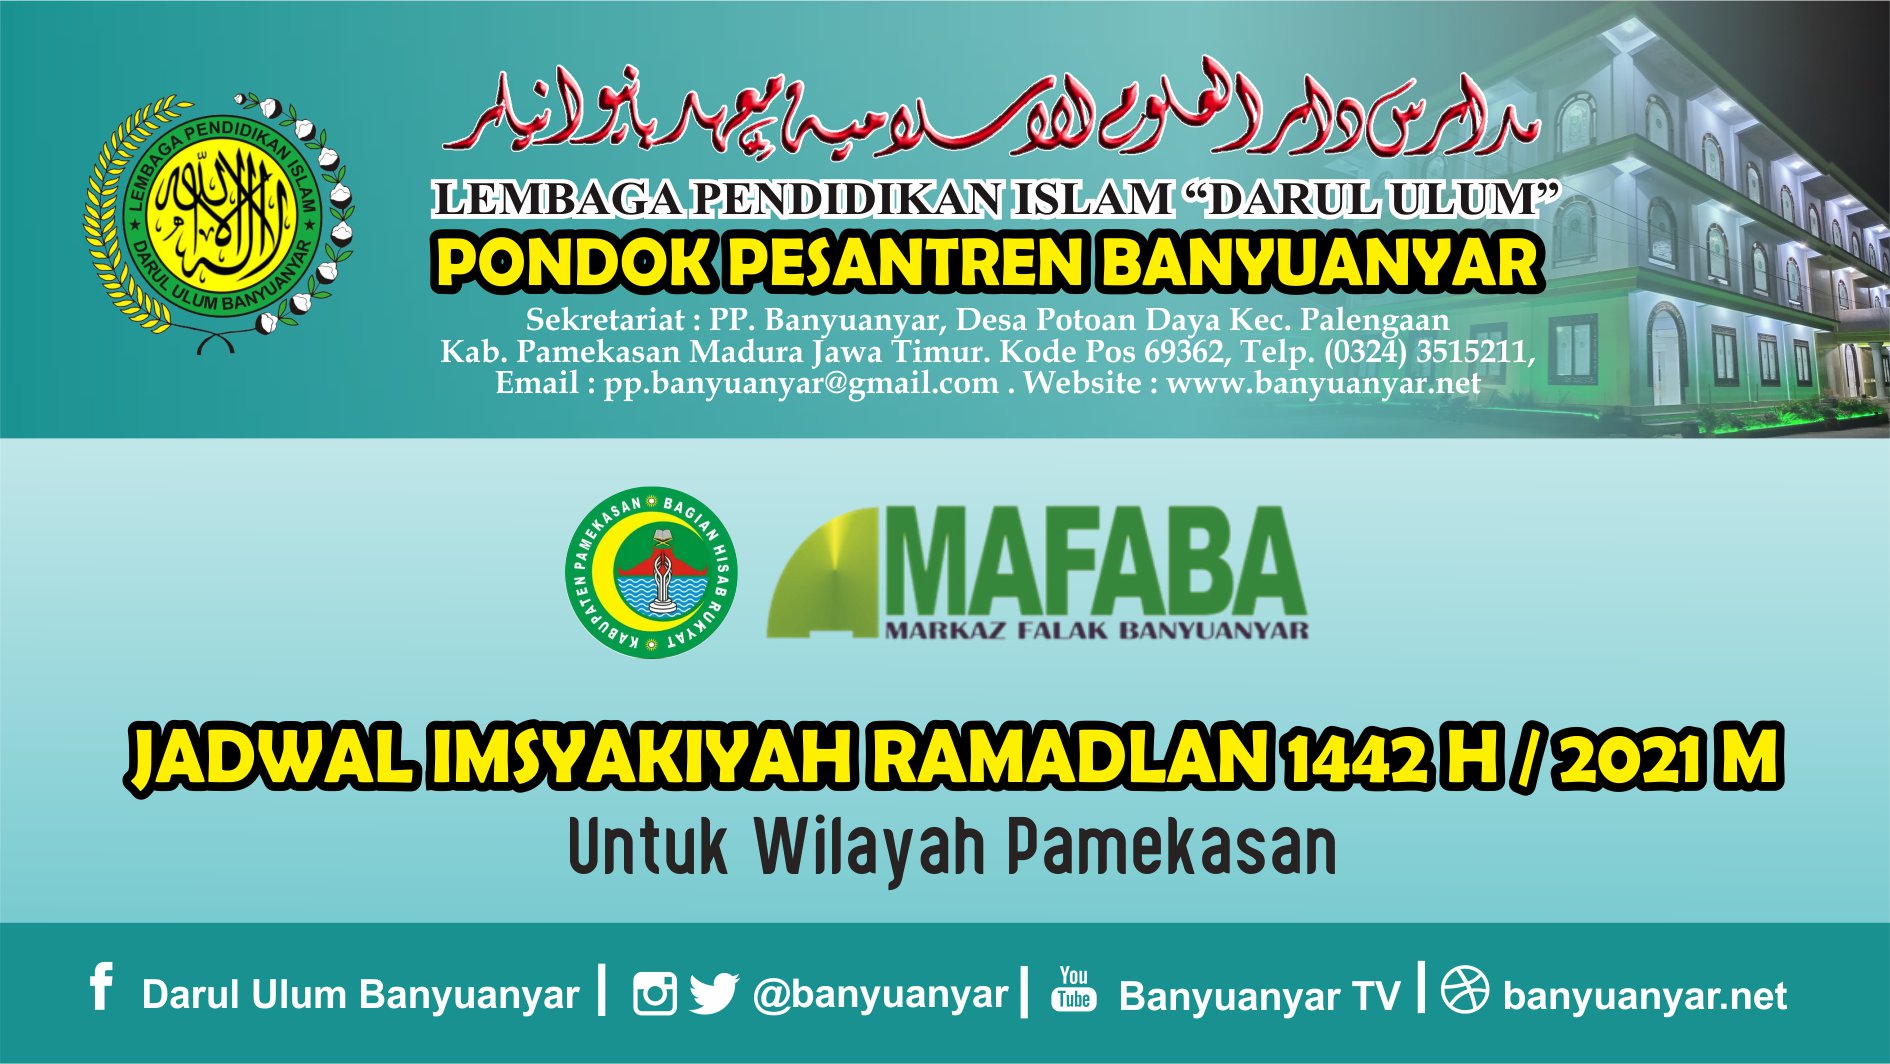 Jadwal Imsakiyah Ramadlan 1442 H Untuk Wilayah Pamekasan